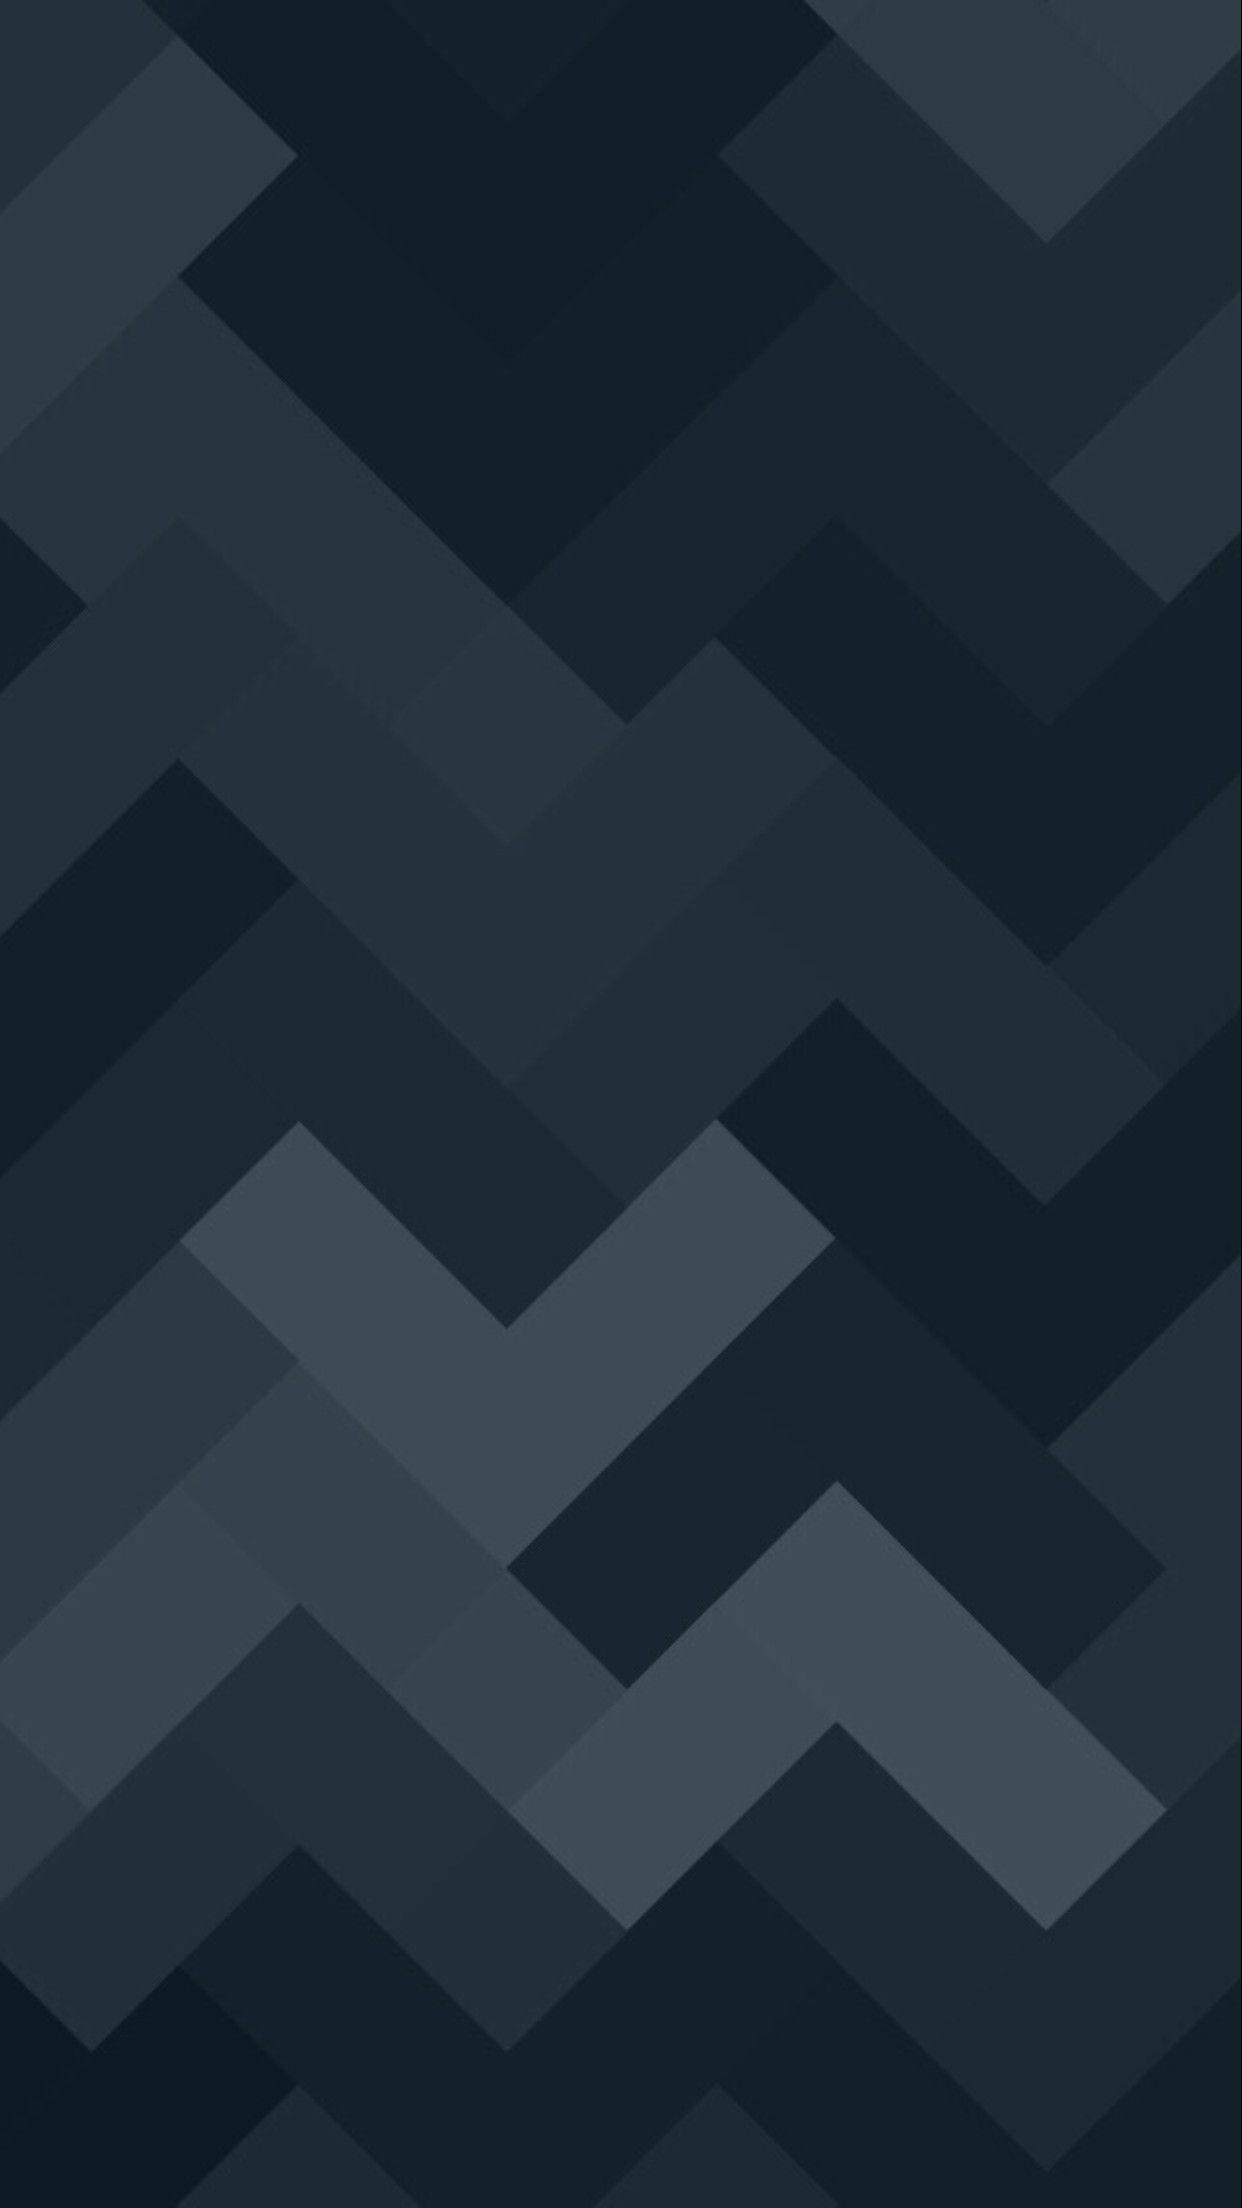 1242 x 2208 · jpeg - Minimalist Geometric Wallpapers - Wallpaper Cave